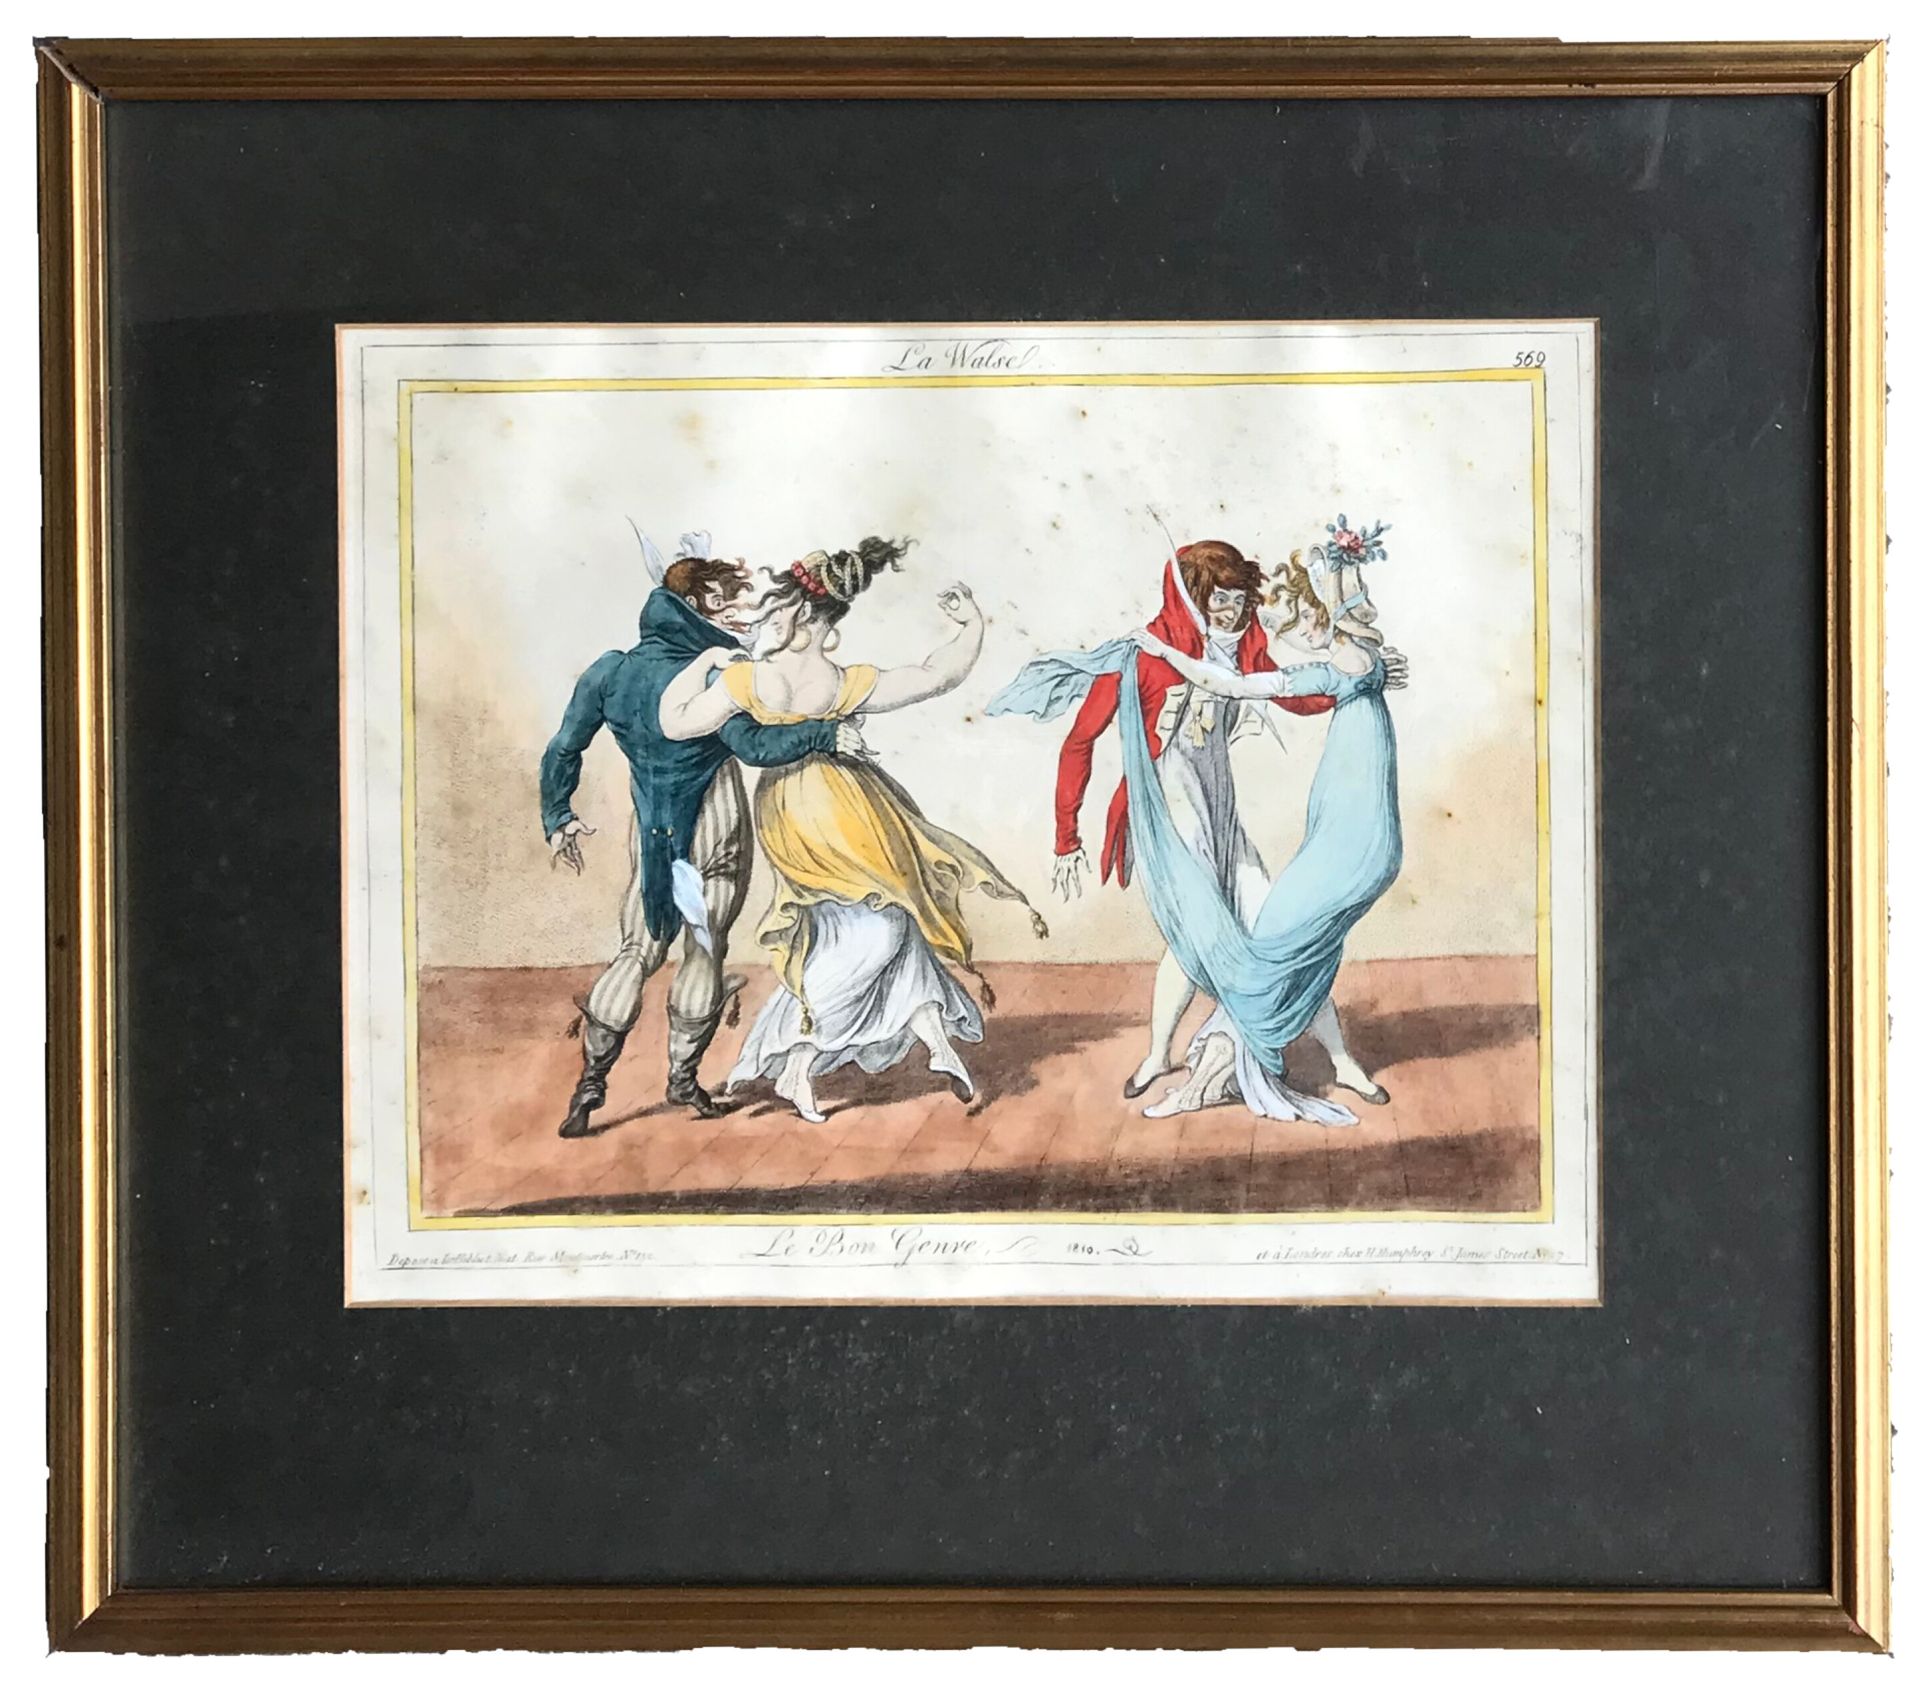 DE LA MESANGERE D'après Pierre de la MESANGERE (1761-1831)

La Walse de la Série&hellip;